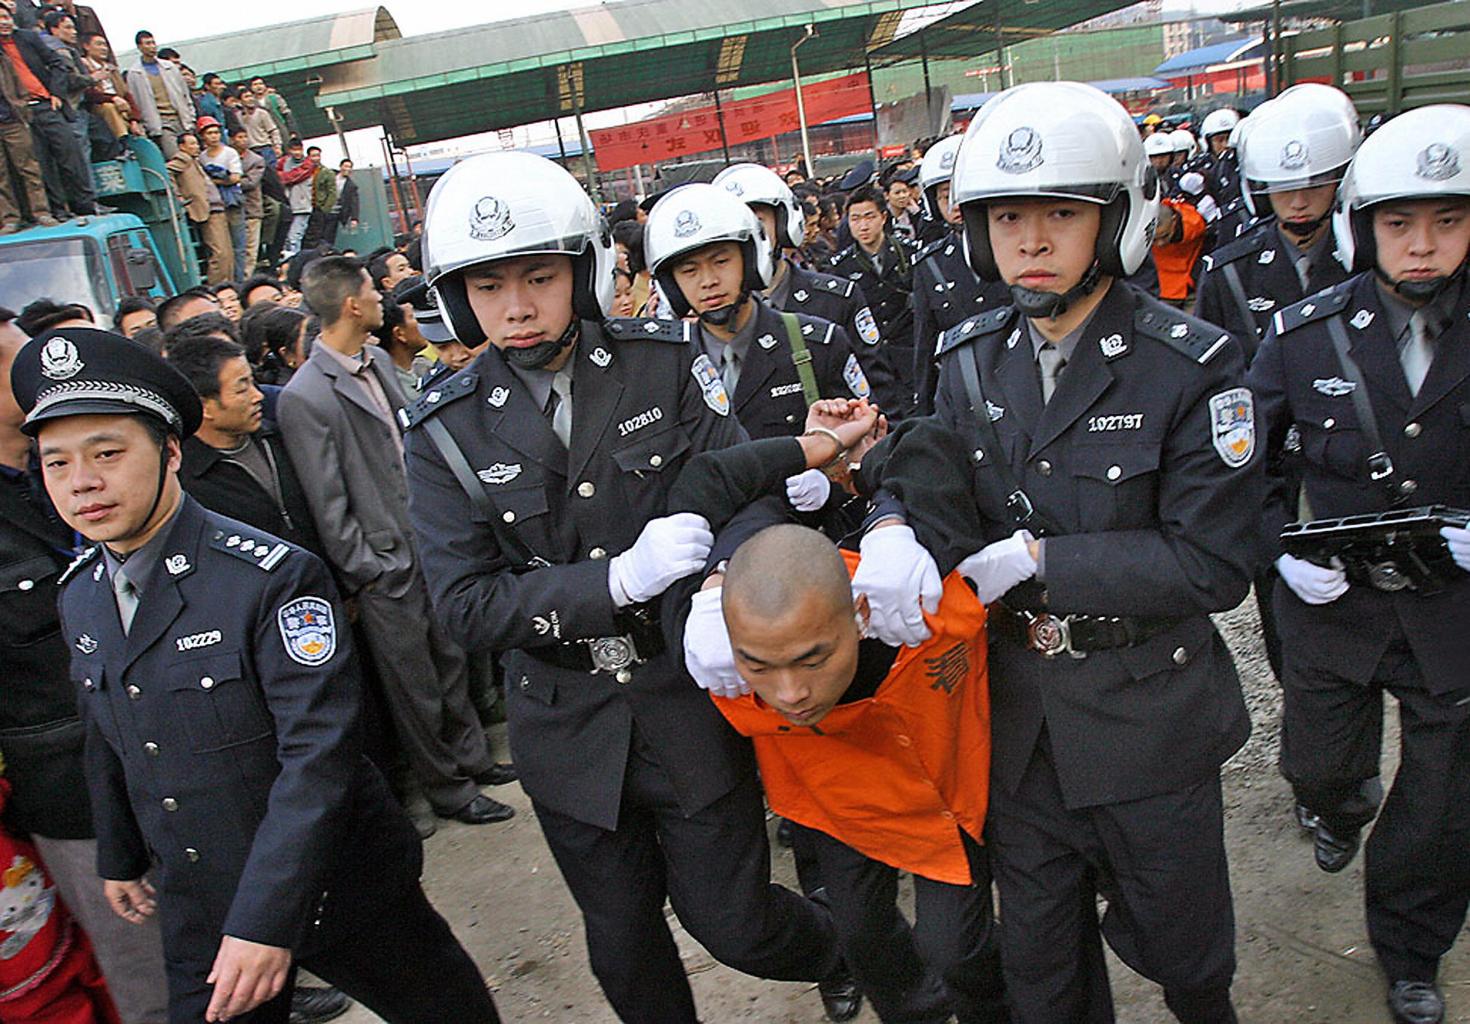 الشرطة الصينية تعتقل شخص - ارشيف